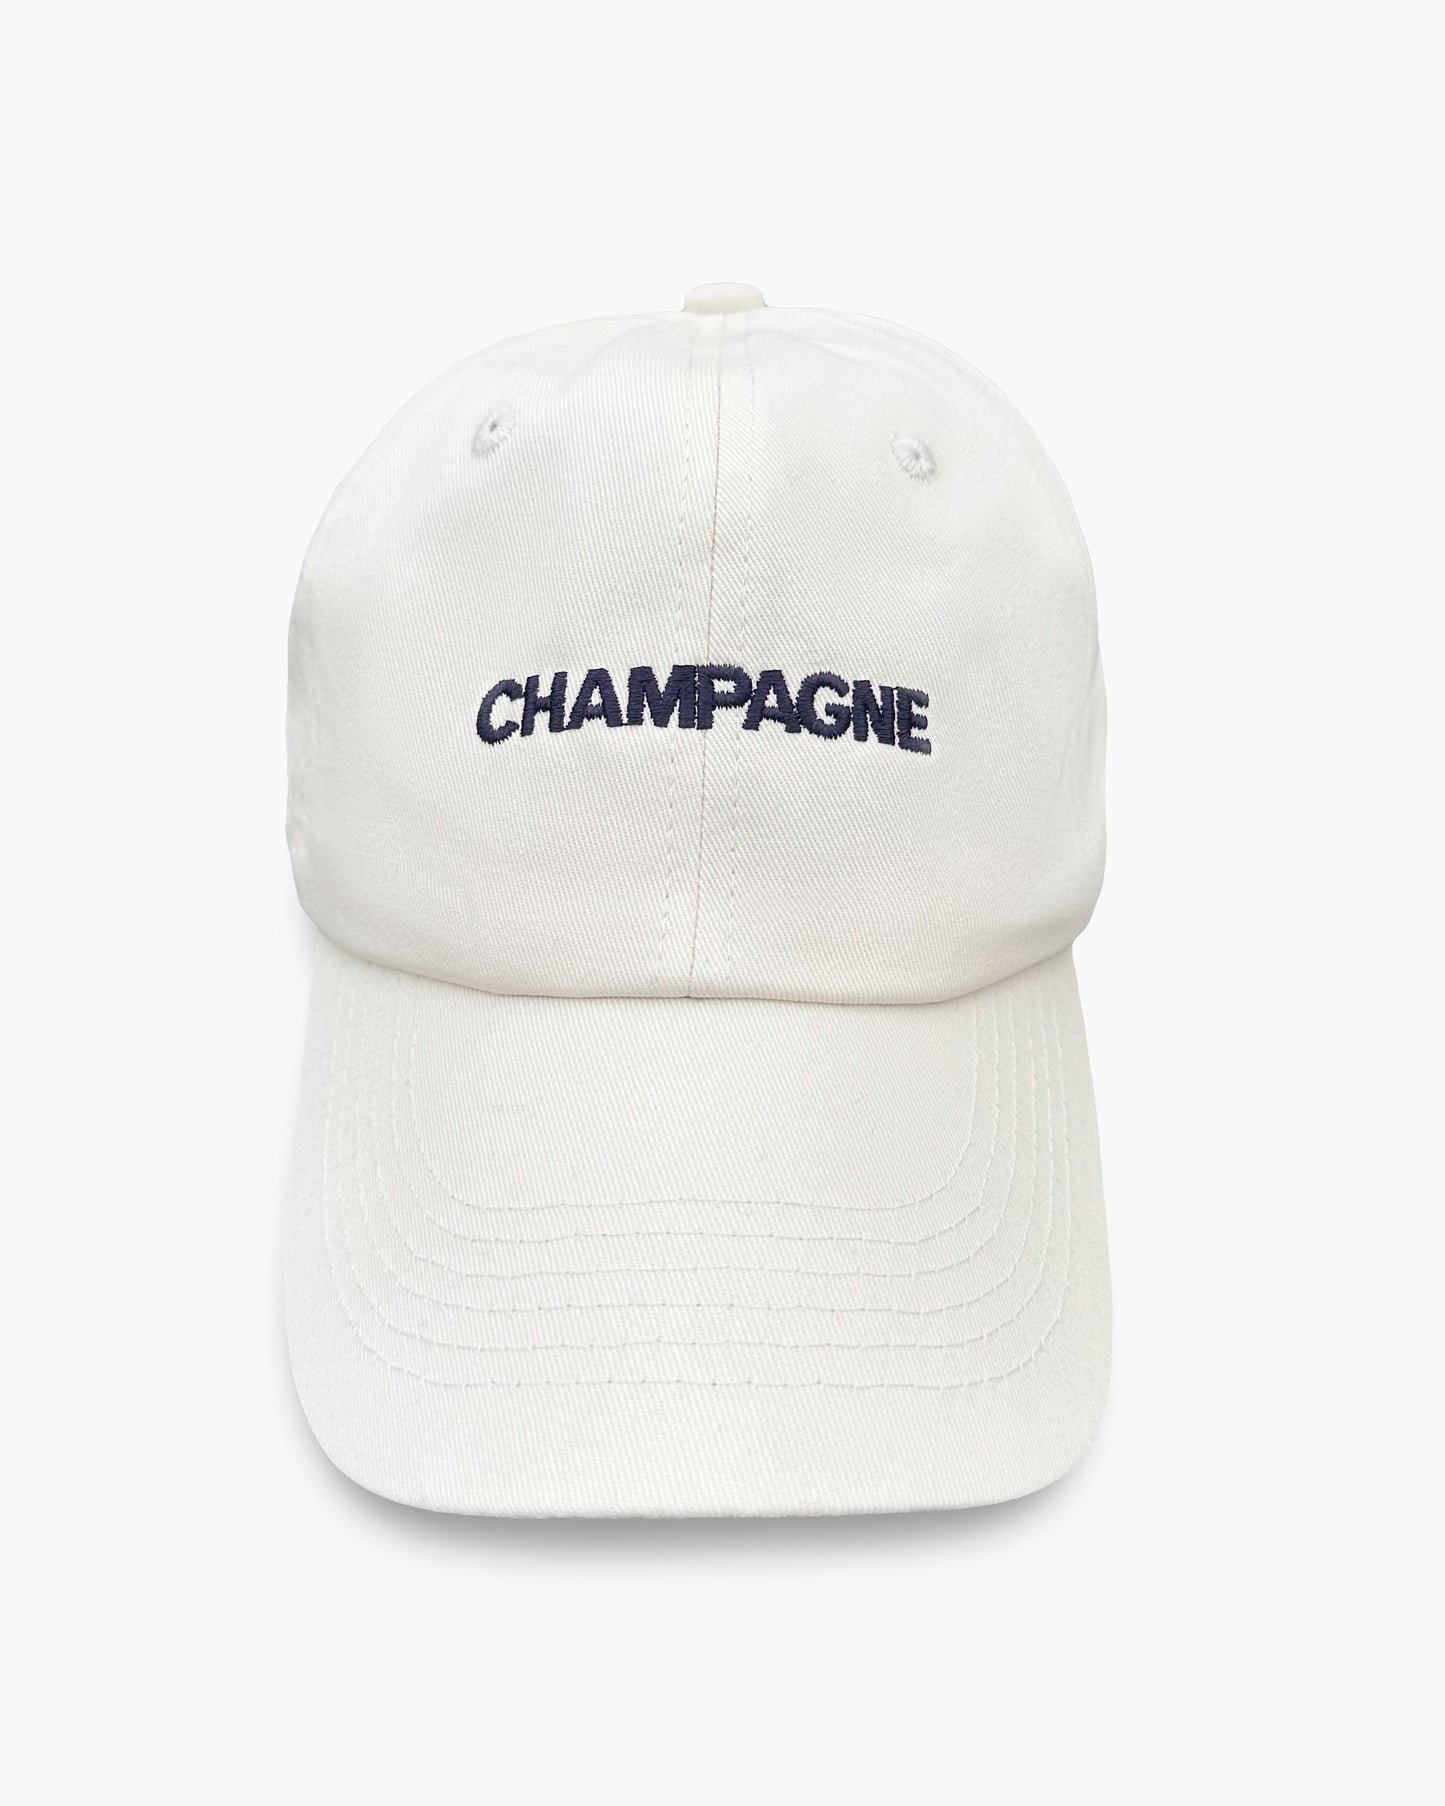 Champagne cap